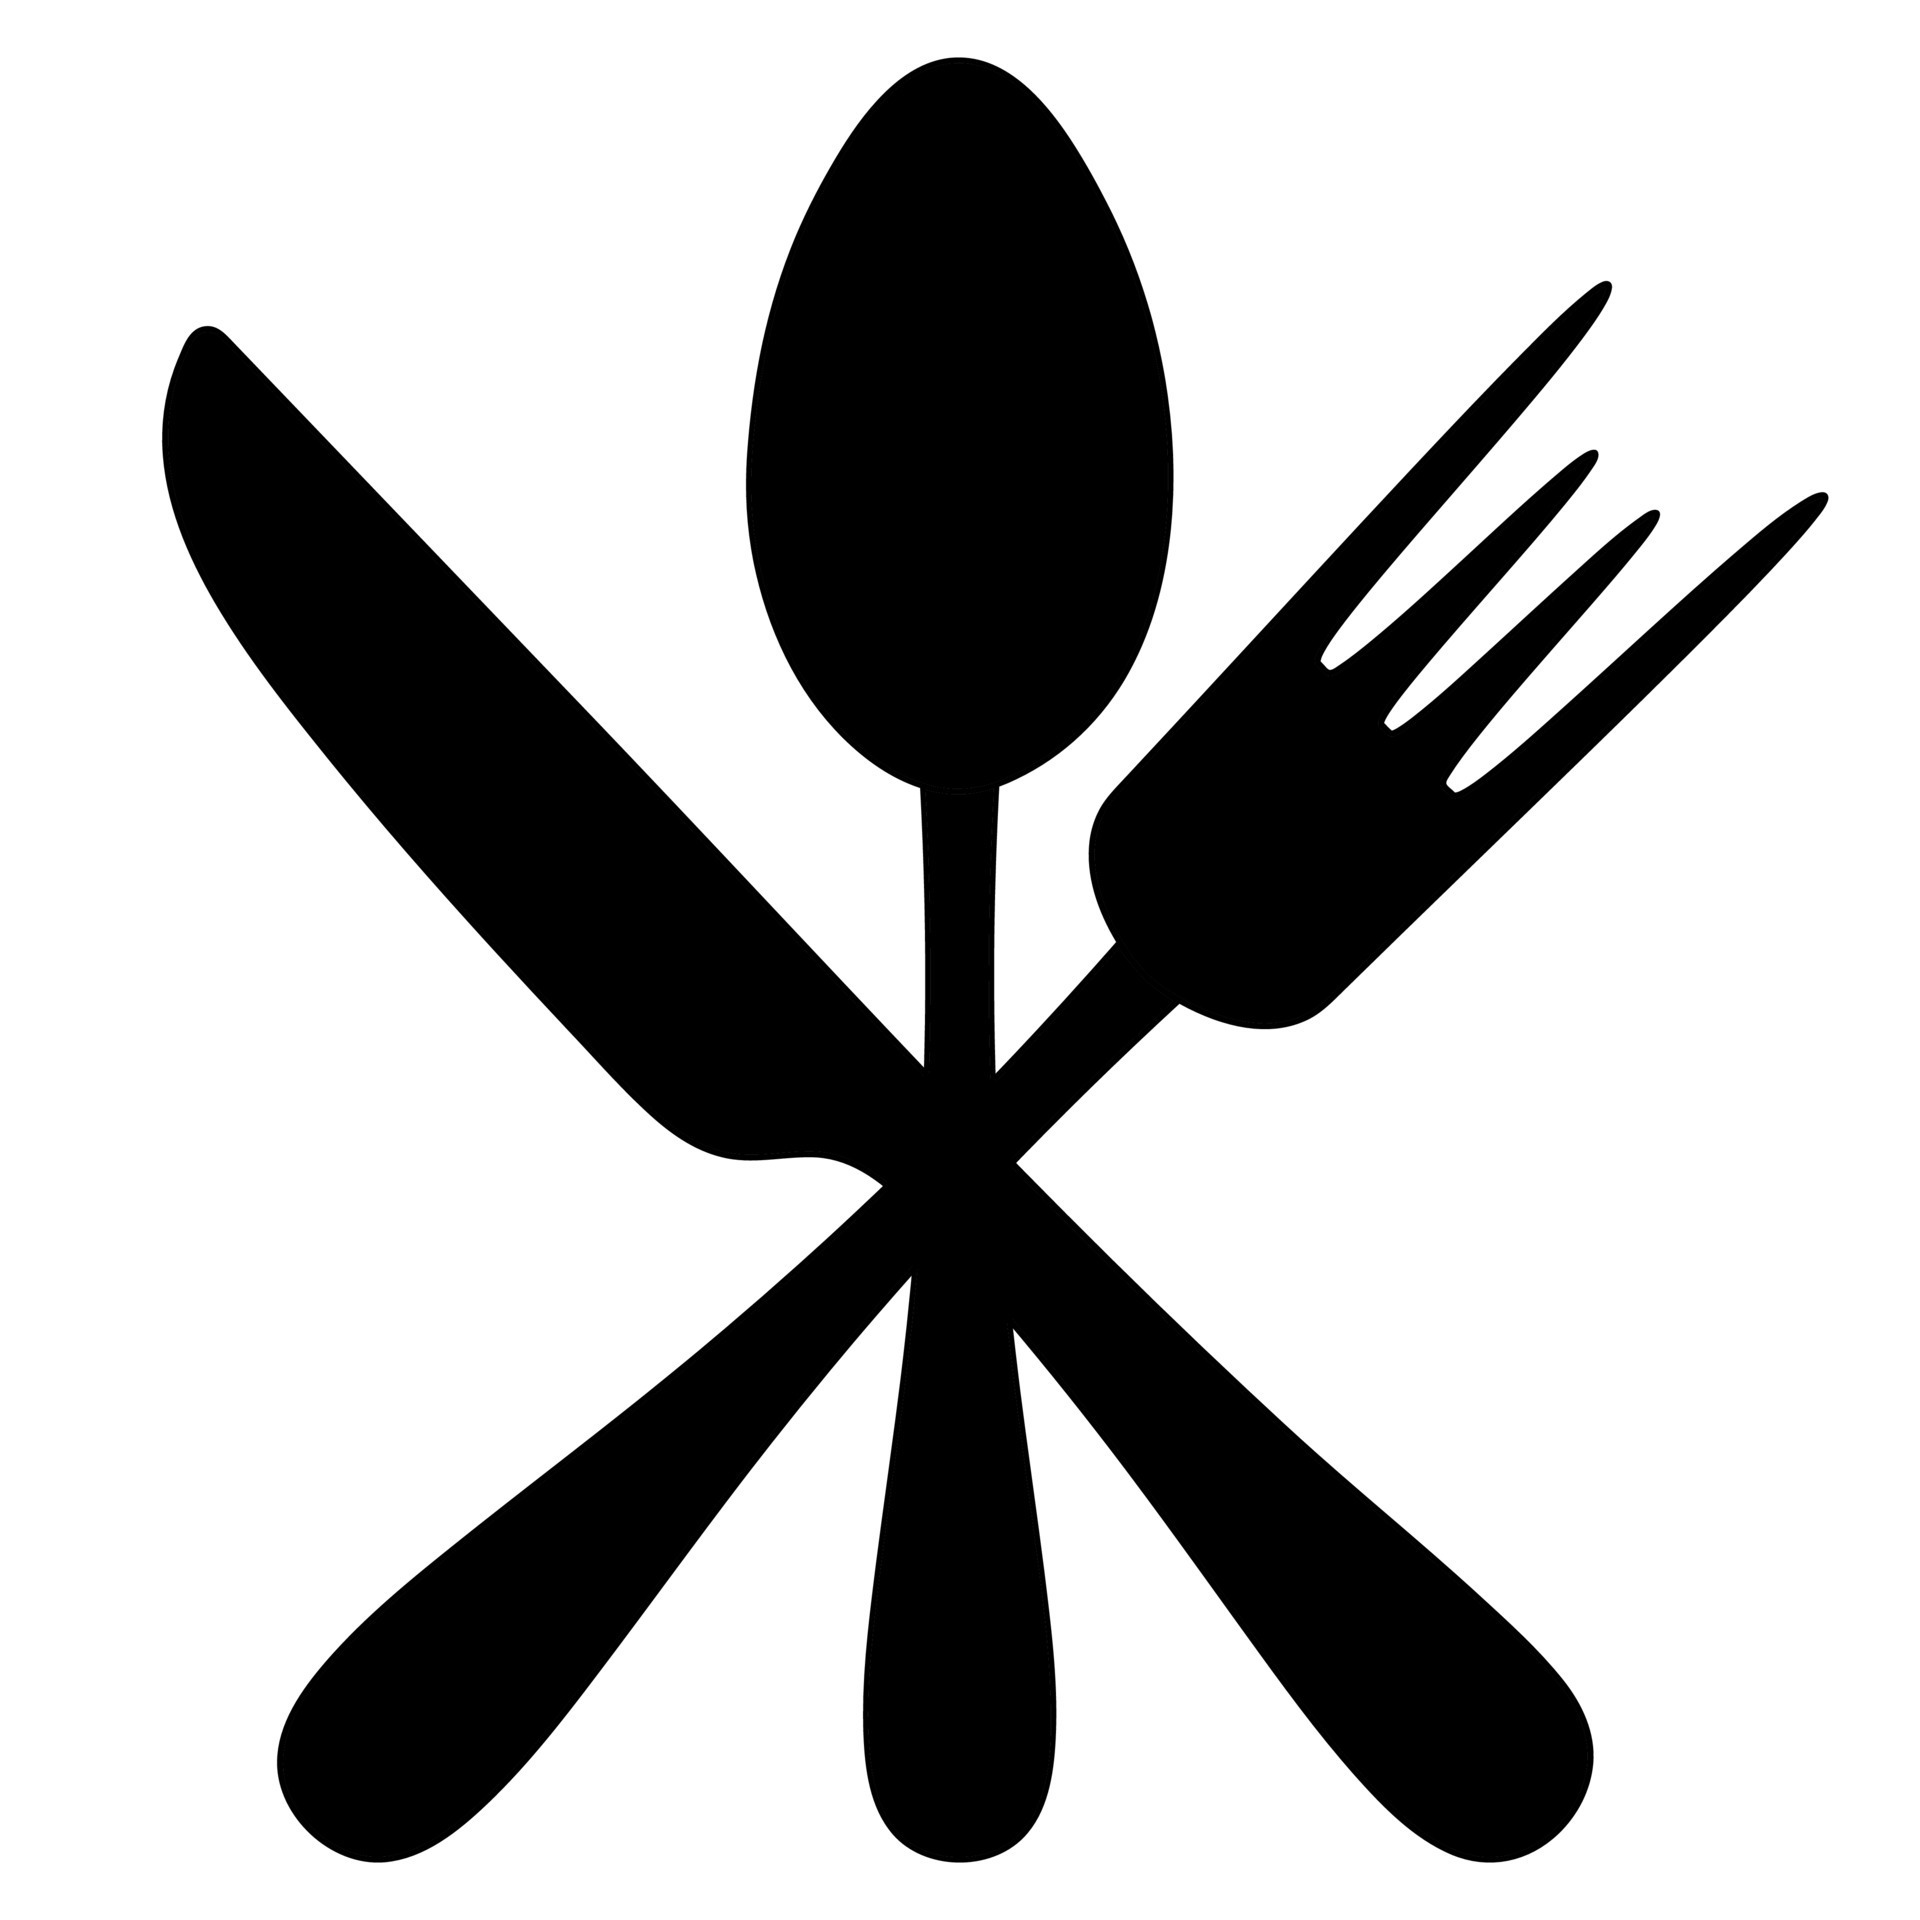 Regelmatigheid kom tot rust dier bestek. silhouet. mes, vork en lepel. verzameling van gereedschap voor aan  het eten. 13998277 Vectorkunst bij Vecteezy